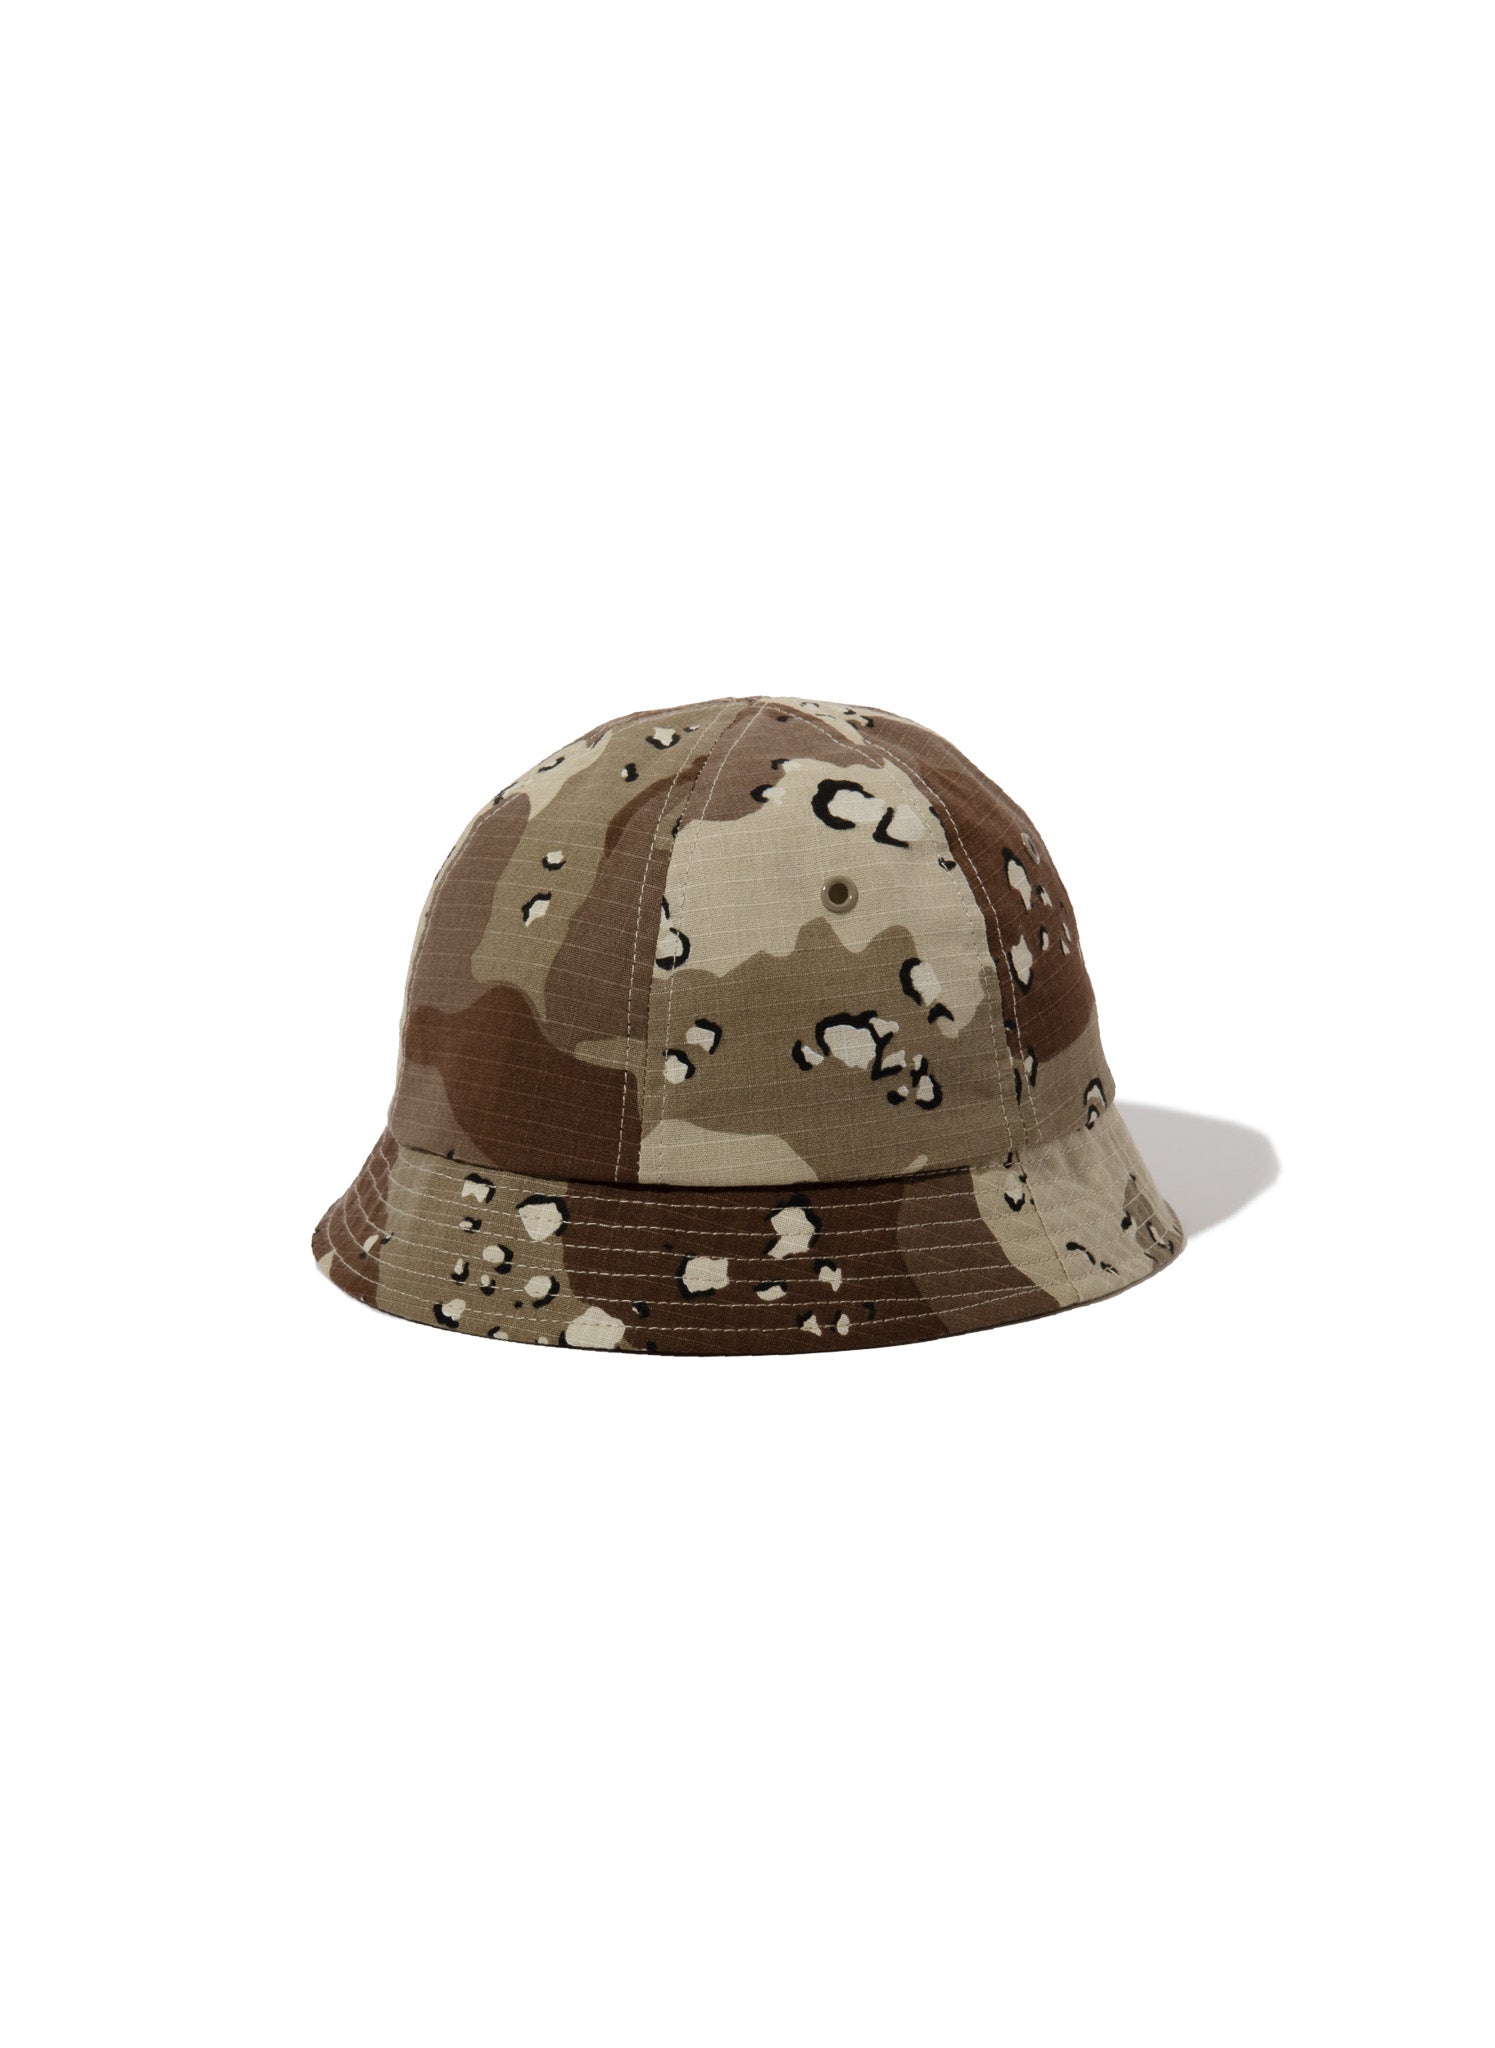 Acy / RS6PANEL HAT DESERT